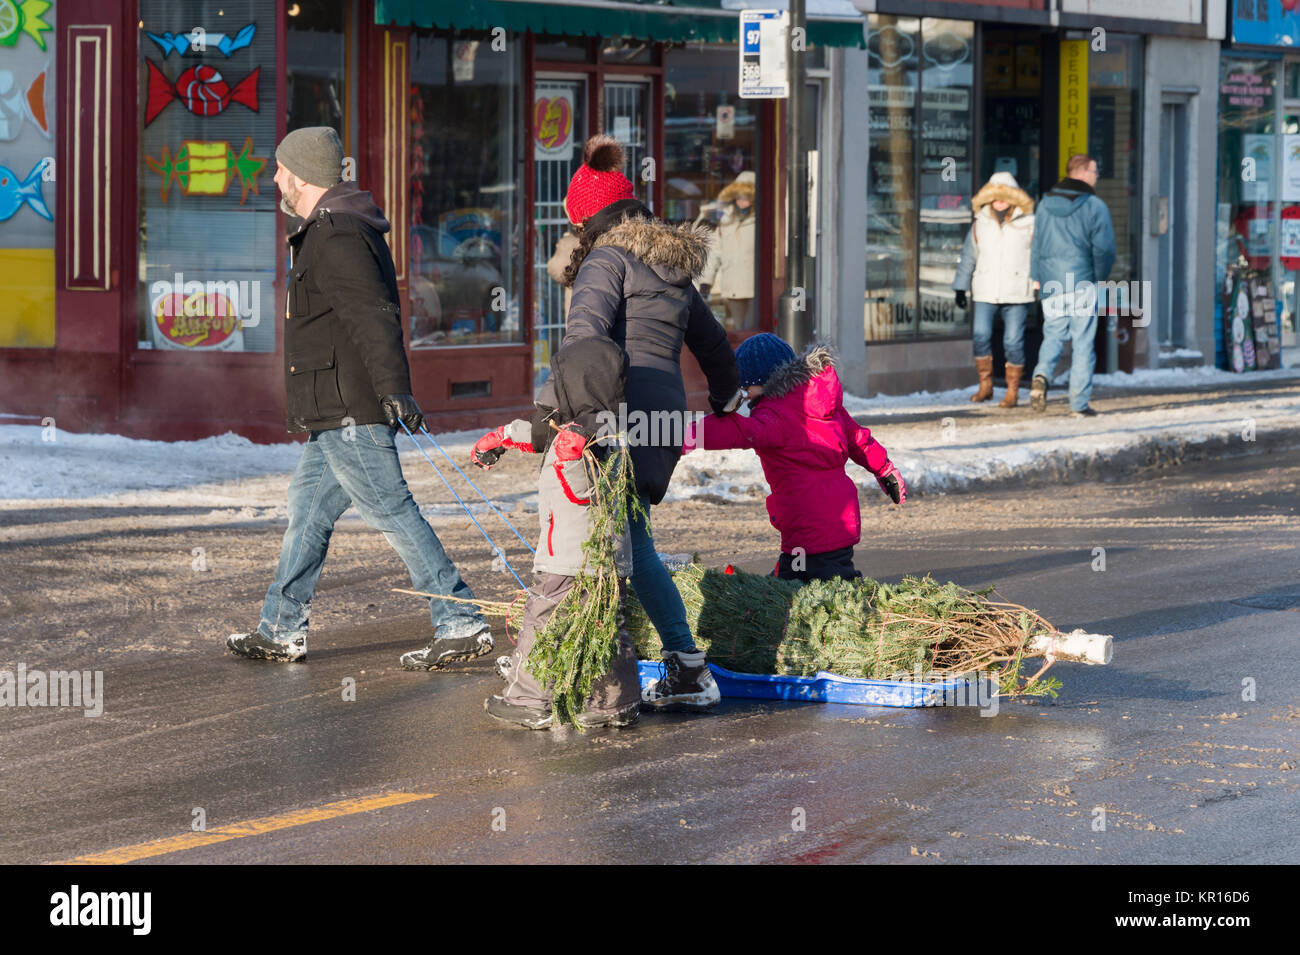 Montréal, Canada - 16 décembre 2017 : La famille tirant sur l'arbre de Noël sur un traîneau Banque D'Images